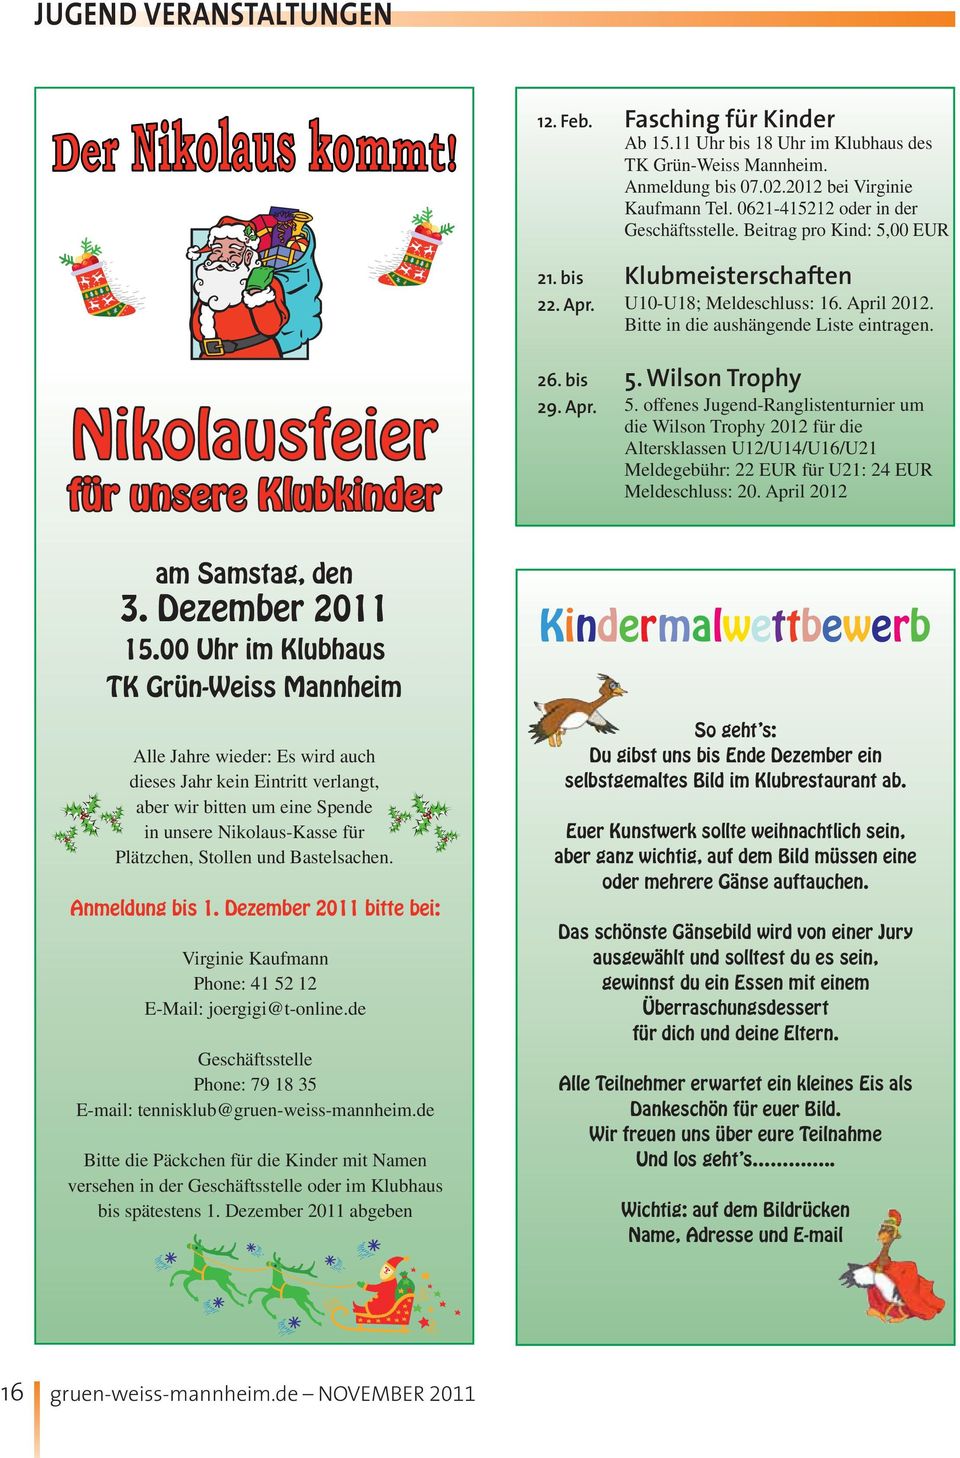 Nikolausfeier für unsere Klubkinder am Samstag, den 3. Dezember 2011 15.